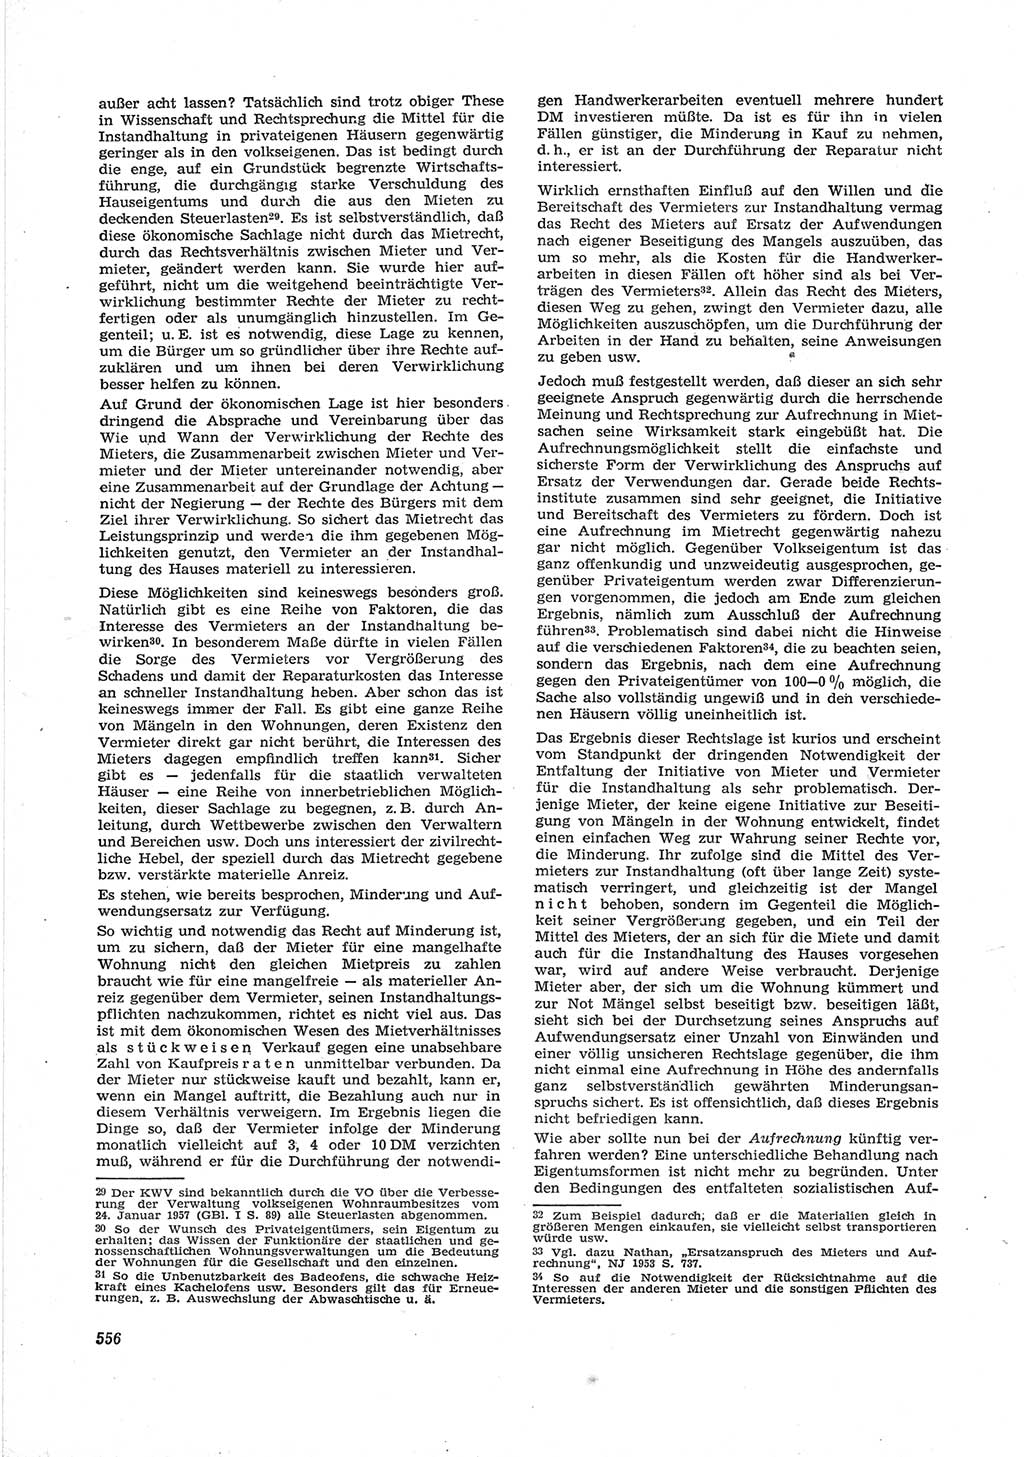 Neue Justiz (NJ), Zeitschrift für Recht und Rechtswissenschaft [Deutsche Demokratische Republik (DDR)], 17. Jahrgang 1963, Seite 556 (NJ DDR 1963, S. 556)